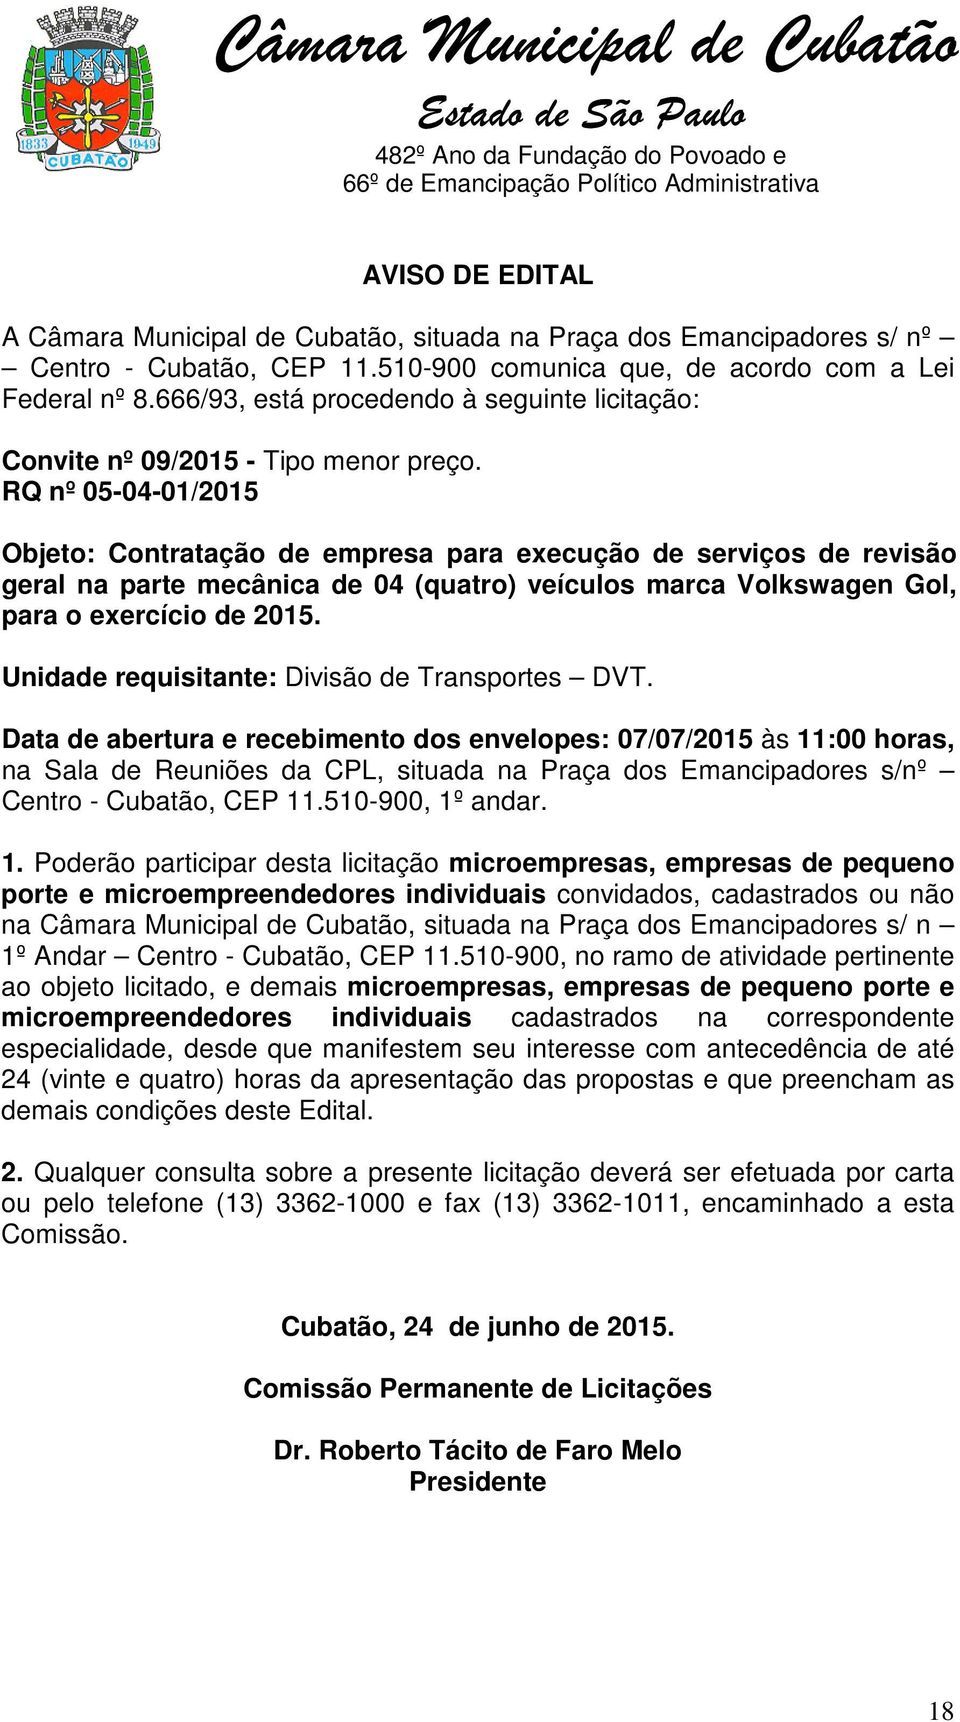 RQ nº 05-04-01/2015 Objeto: Contratação de empresa para execução de serviços de revisão geral na parte mecânica de 04 (quatro) veículos marca Volkswagen Gol, para o exercício de 2015.